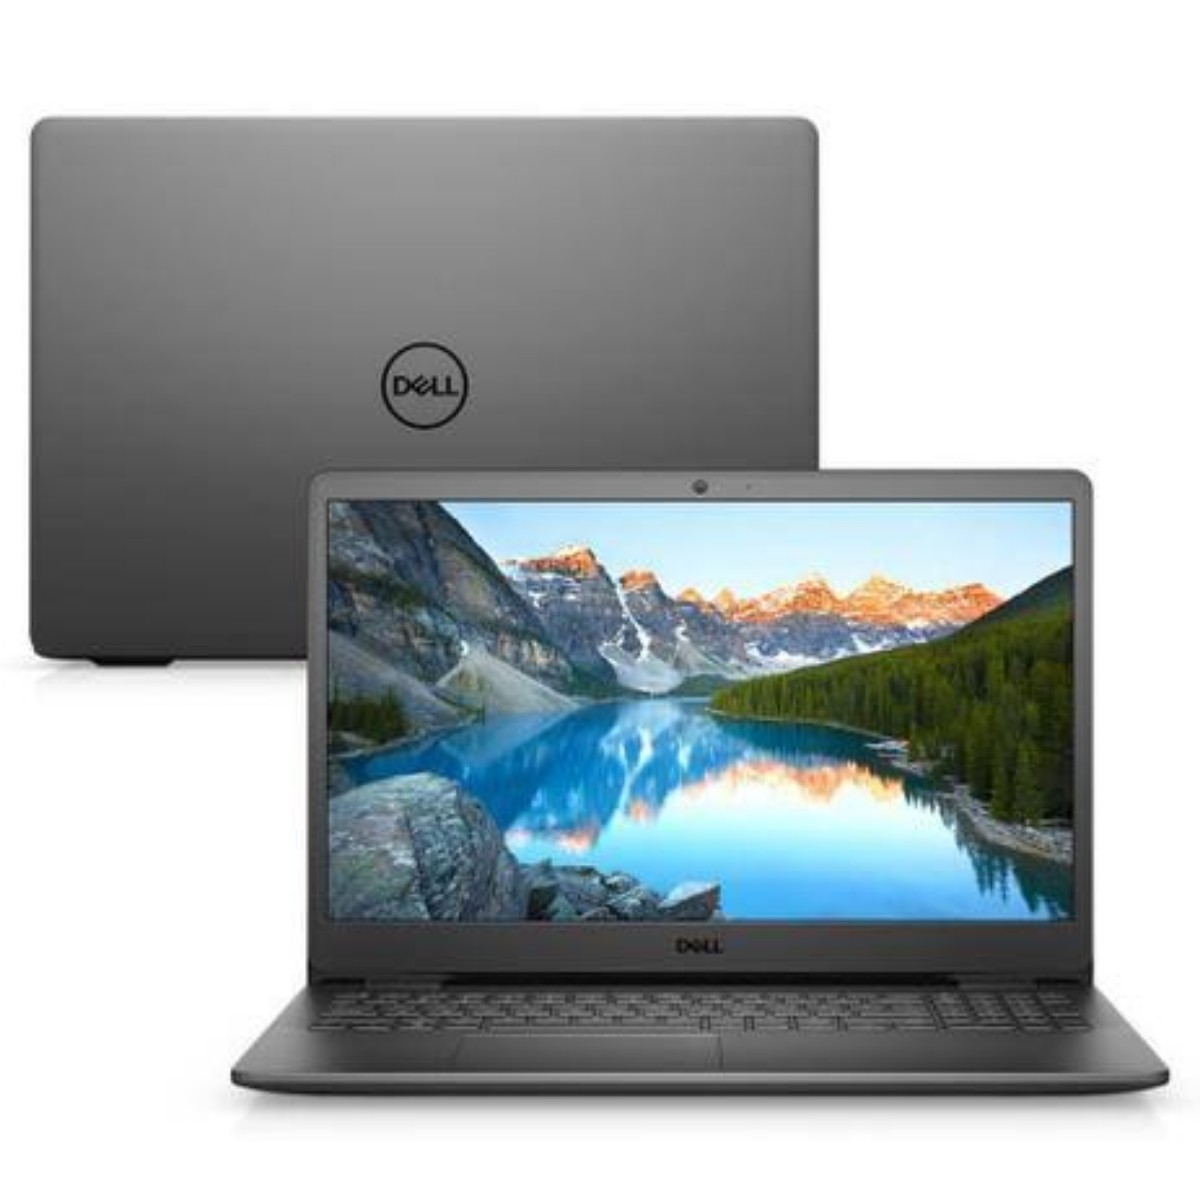 Melhor notebook até 3000 reais modelo Dell Inspiron 15 3000